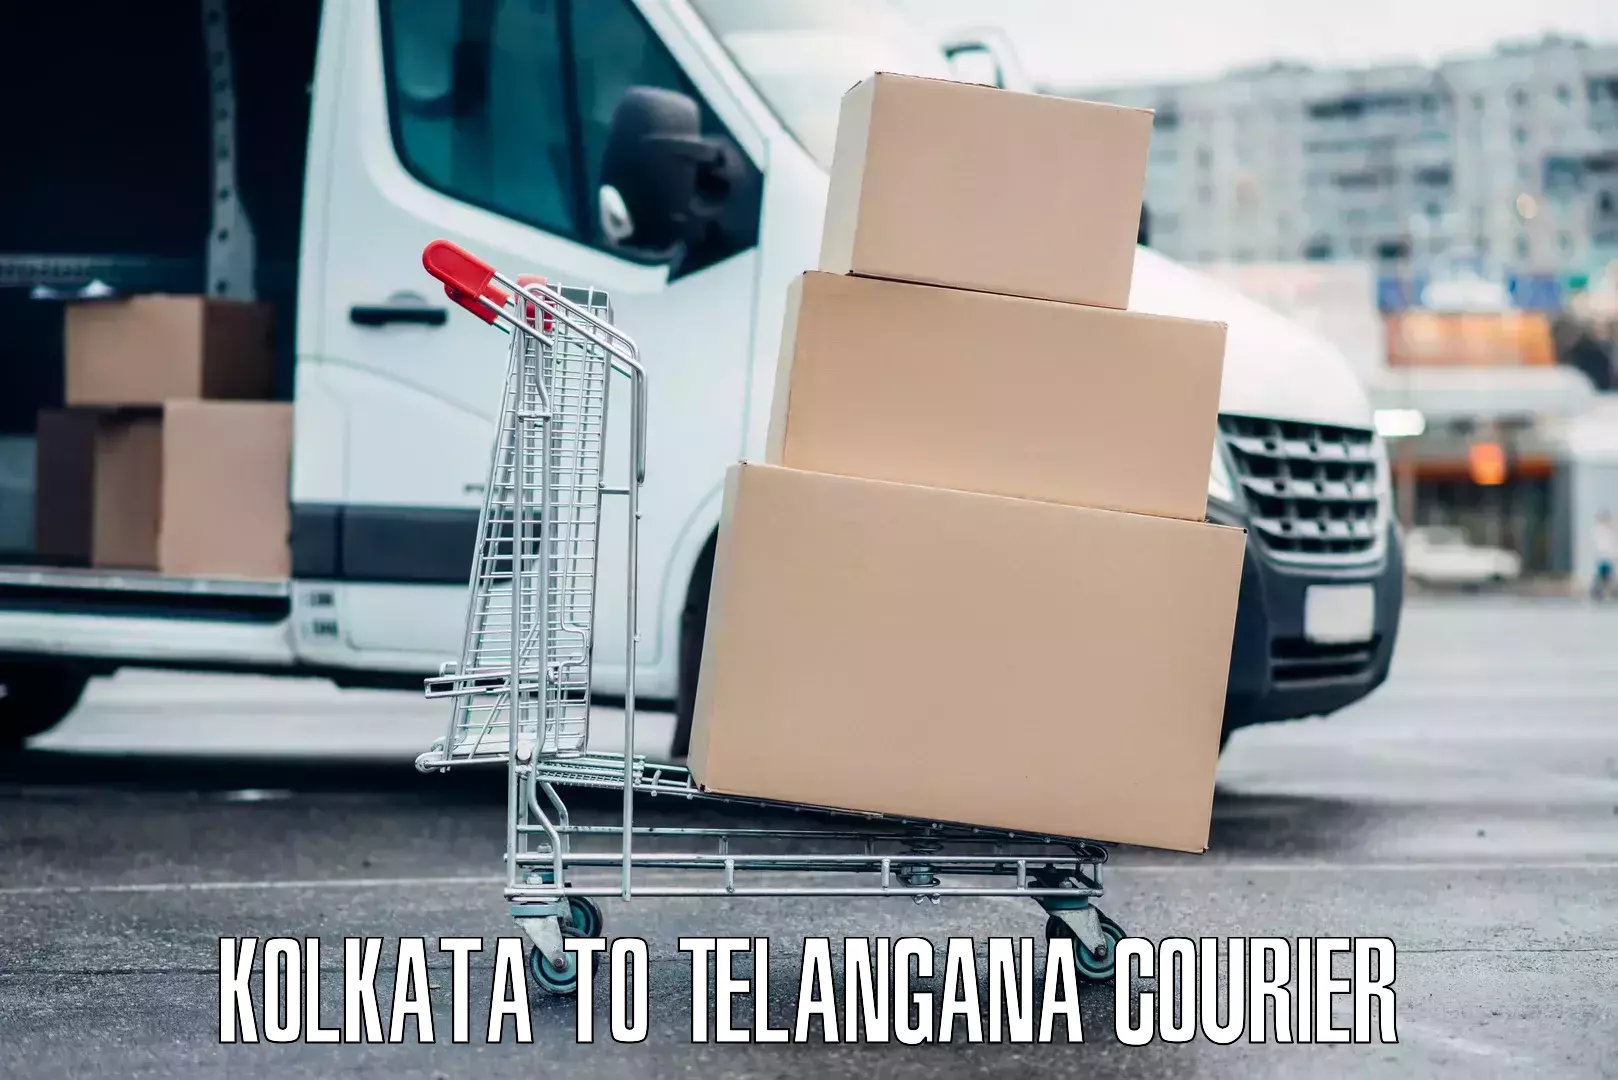 Express luggage delivery Kolkata to Telangana